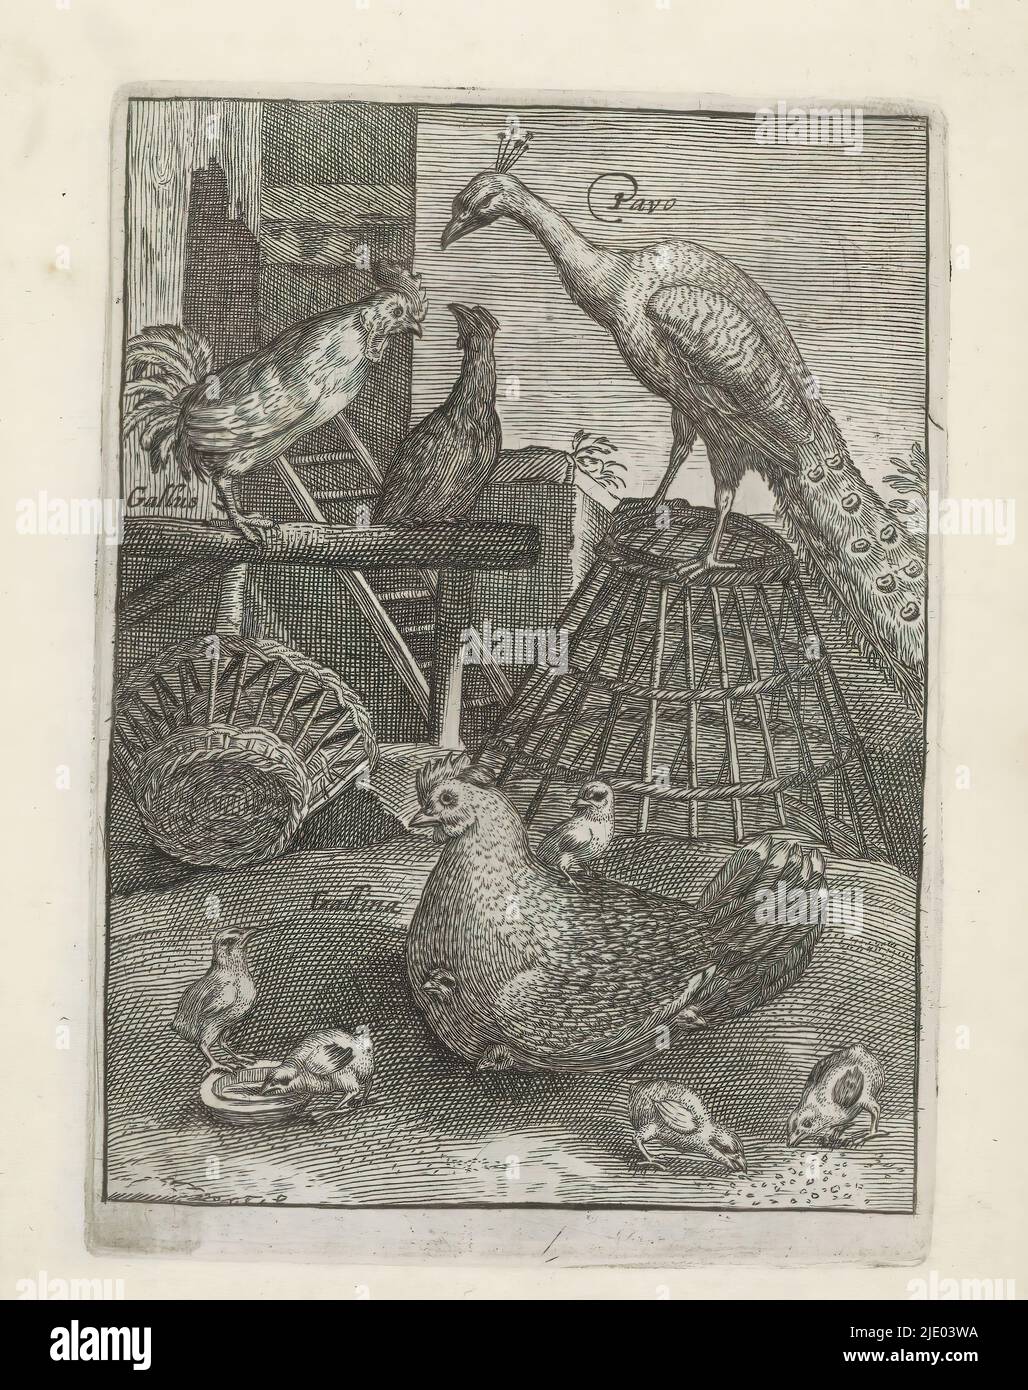 Pfau und Hühner, Vögel (Serientitel), Avium Vivae Icones (...) (Serientitel), im Vordergrund ein Huhn mit Küken. Auf einem Stock ein Hahn. Auf einem umgedrehten Korb sitzt ein Pfau. Dieser Druck ist Teil eines Albums., Druckerei: Anonym, Druckerei: Crispijn van de Passe (I), (abgelehnte Namensnennung), nach Gestaltung von: Adriaen Collaert, Utrecht, 1635 - 1660, Papier, Gravur, Höhe 123 mm × Breite 89 mm Stockfoto